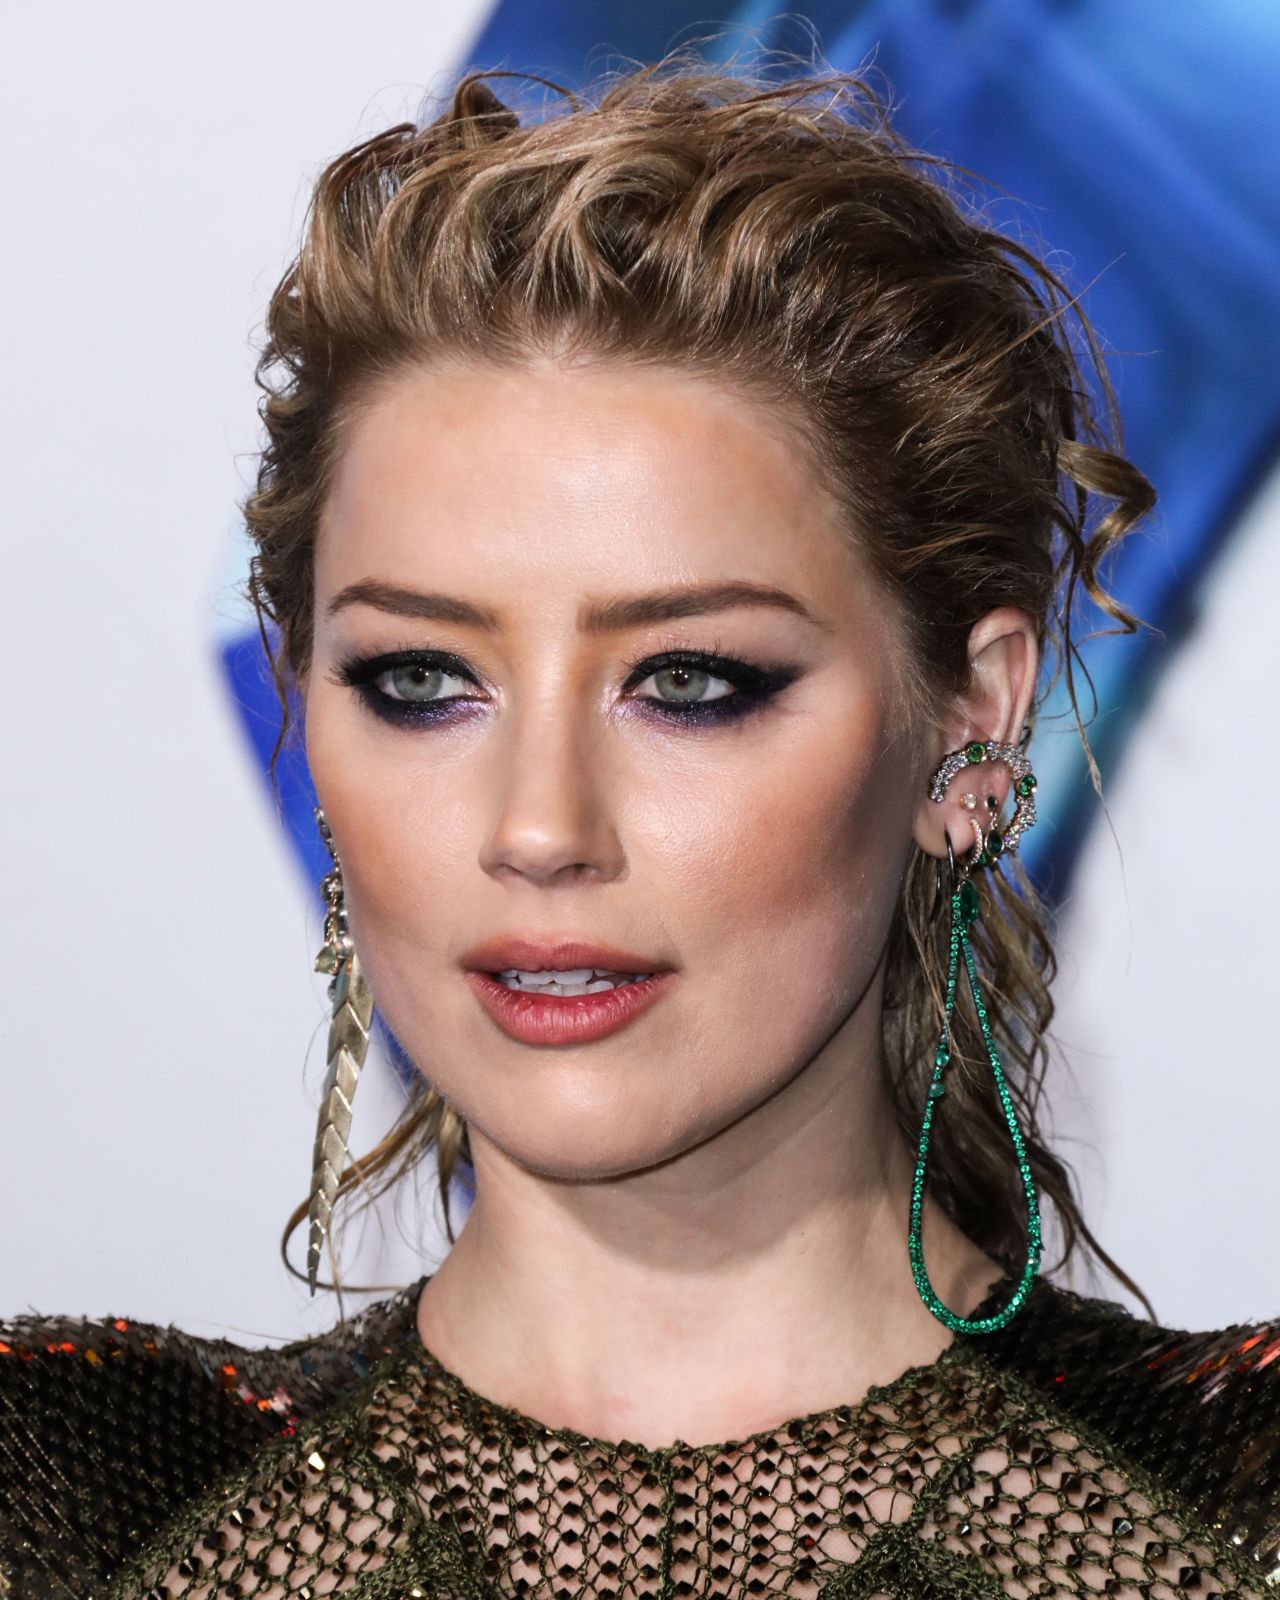 Amber Heard - "Aquaman" Premiere in LA • CelebMafia